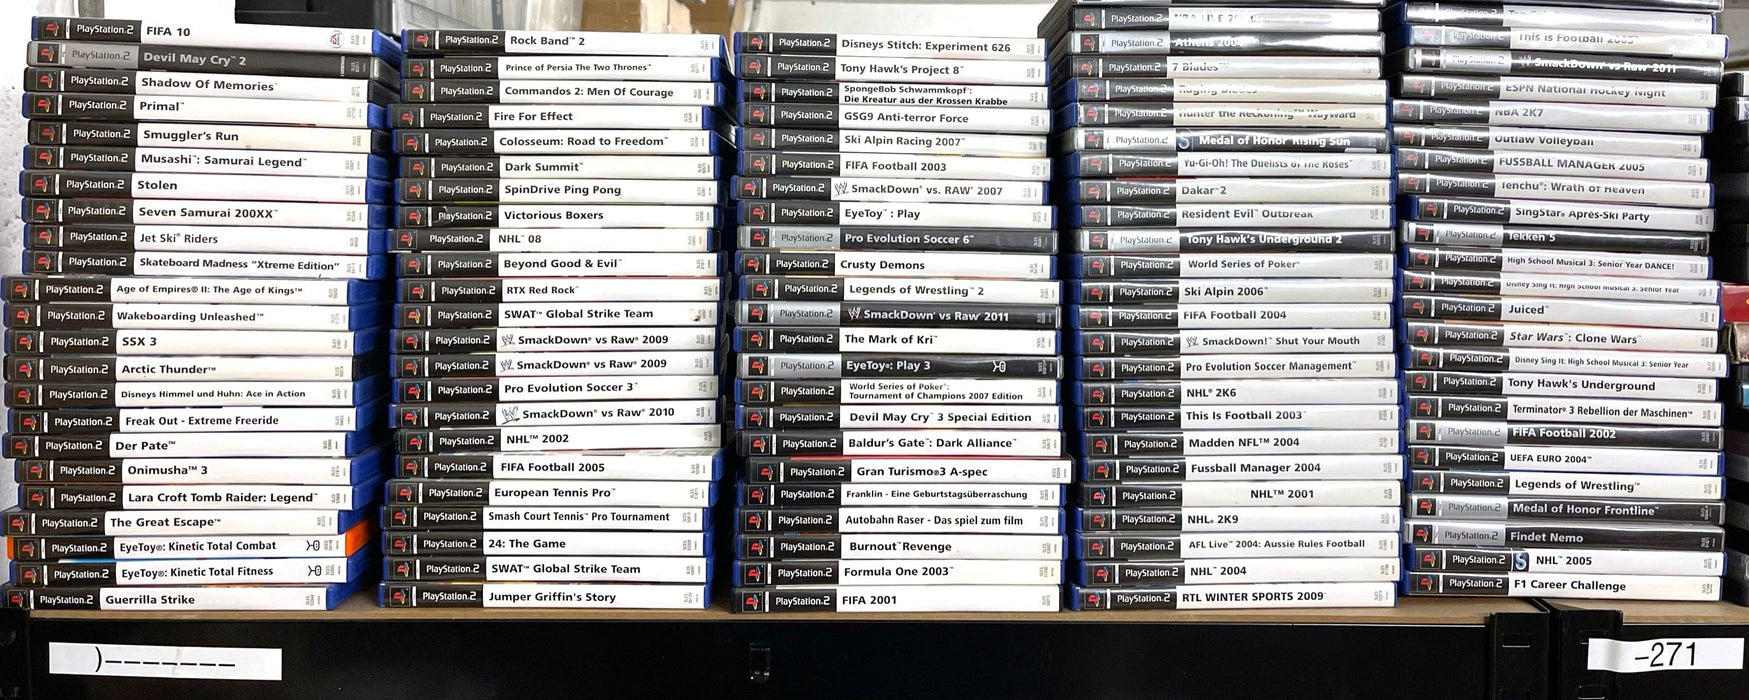 Glaciergames PlayStation 2 Game Medal of Honor: Frontline PlayStation 2 (Nr.300)